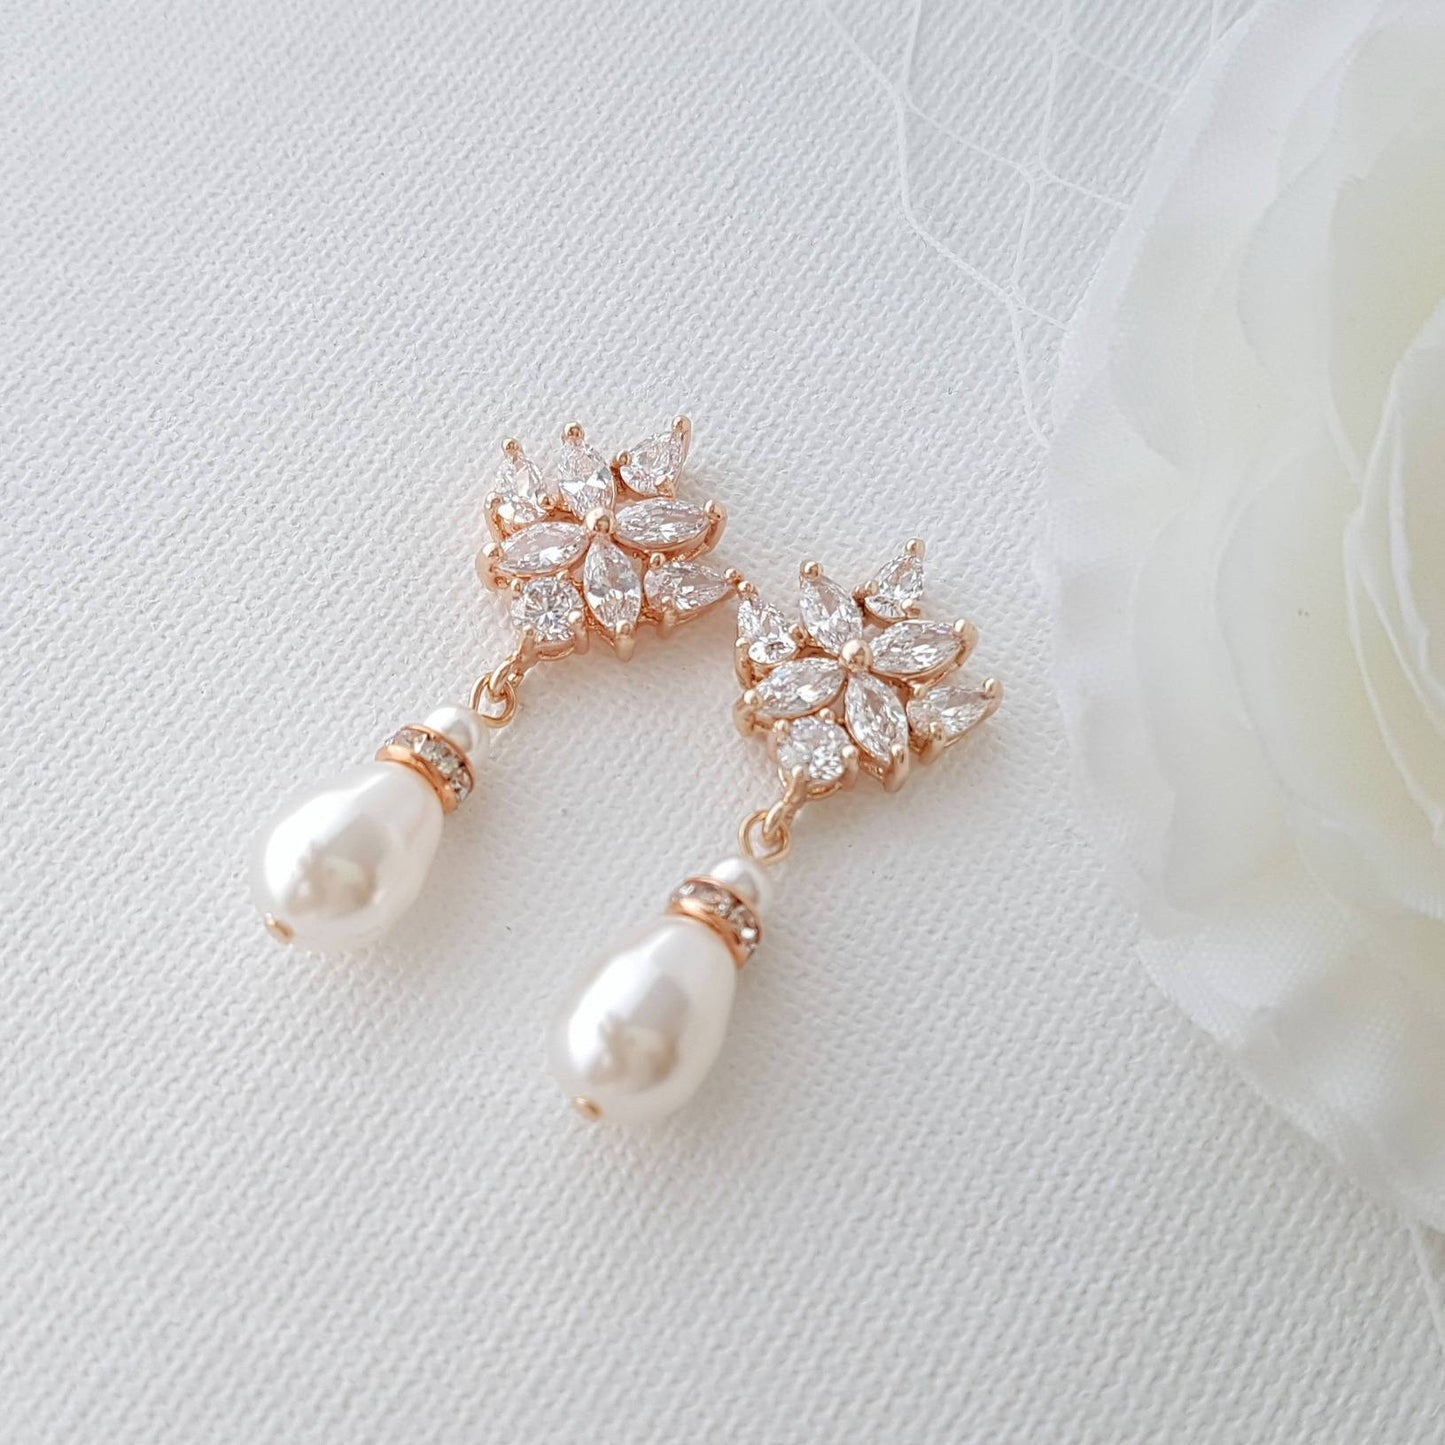 Rose Gold Bridal Earrings, Crystal Wedding Earrings, Bridesmaid, Swarovski Pearls Drop Earrings, Bridal Jewelry, Rose Gold Jewelry, Rosa - PoetryDesigns